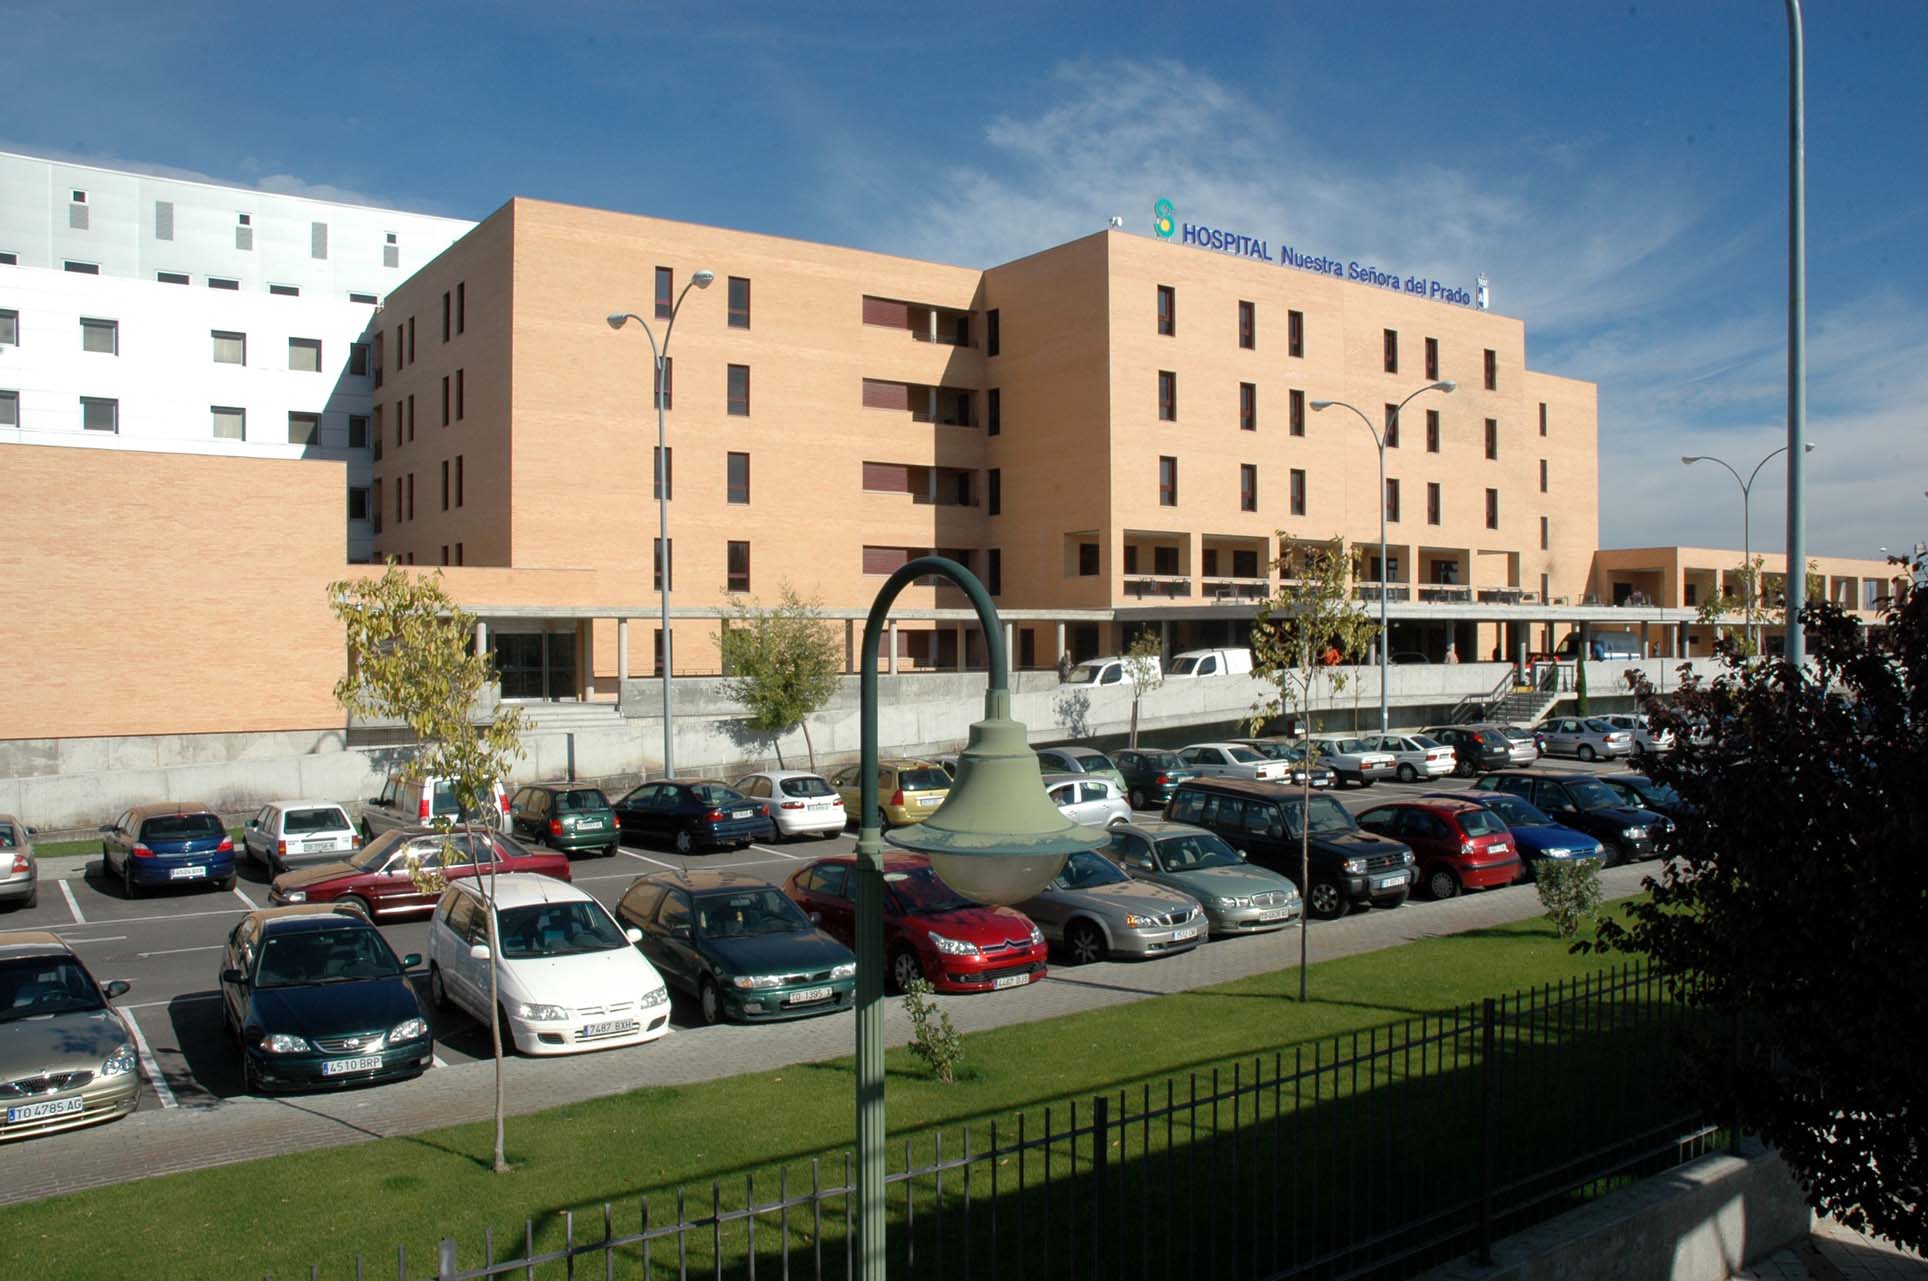 Hospital Nuestra Señora del Prado de Talavera, adonde fueron trasladadas las dos heridas